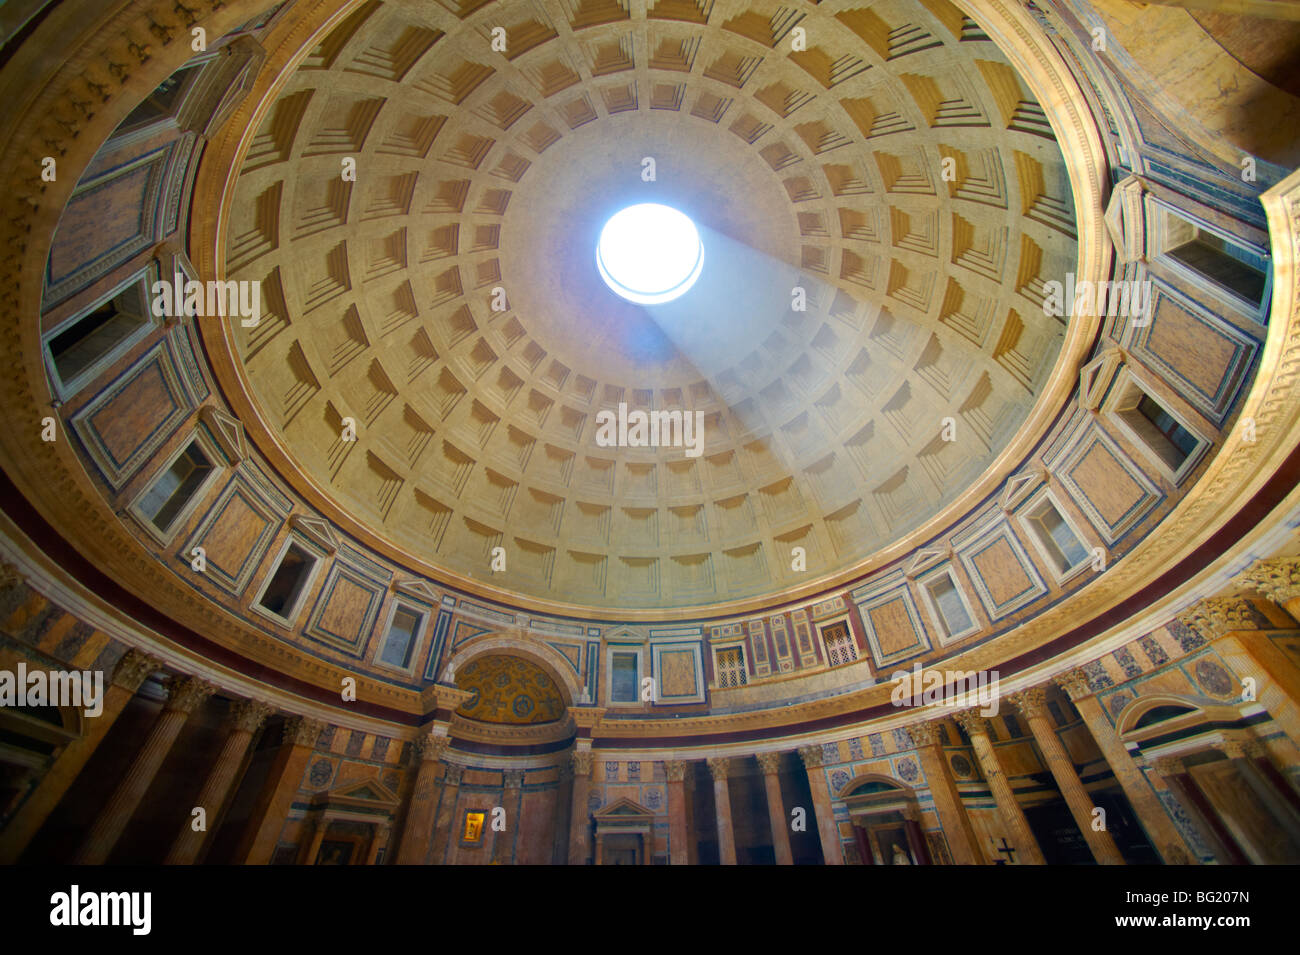 L'intérieur du dôme du panthéon, Rome Banque D'Images